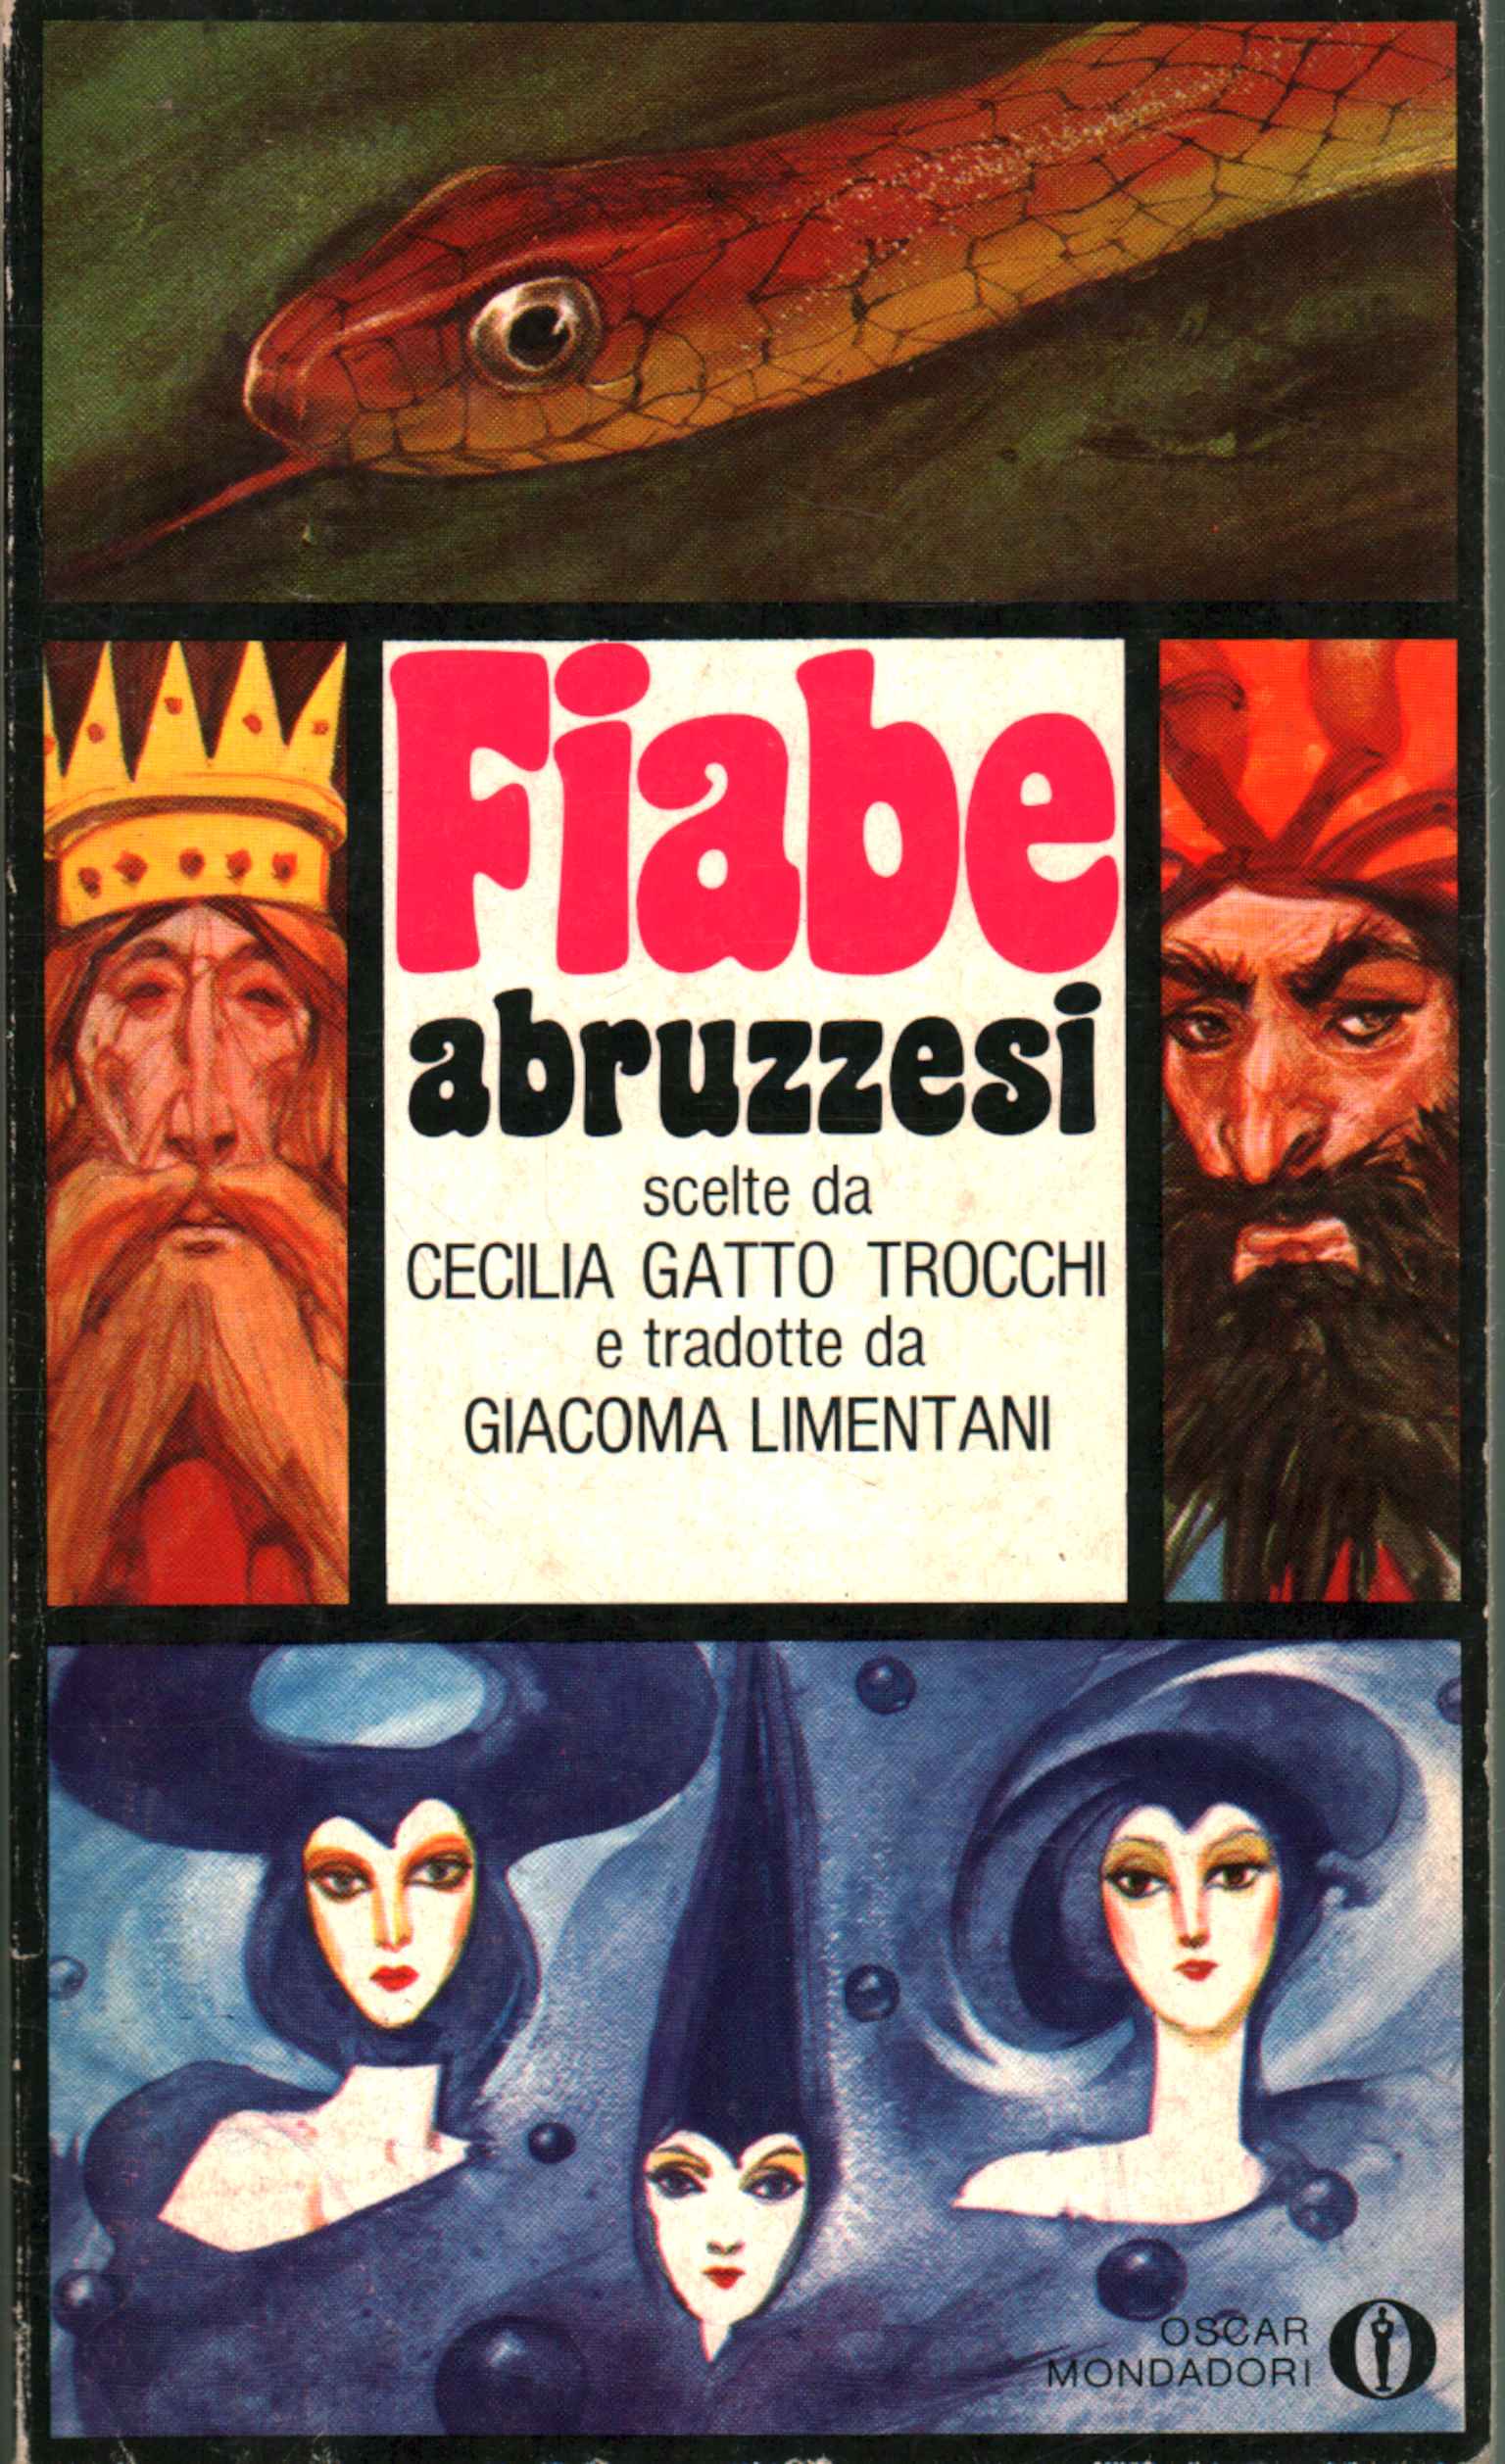 Abruzzo fairy tales